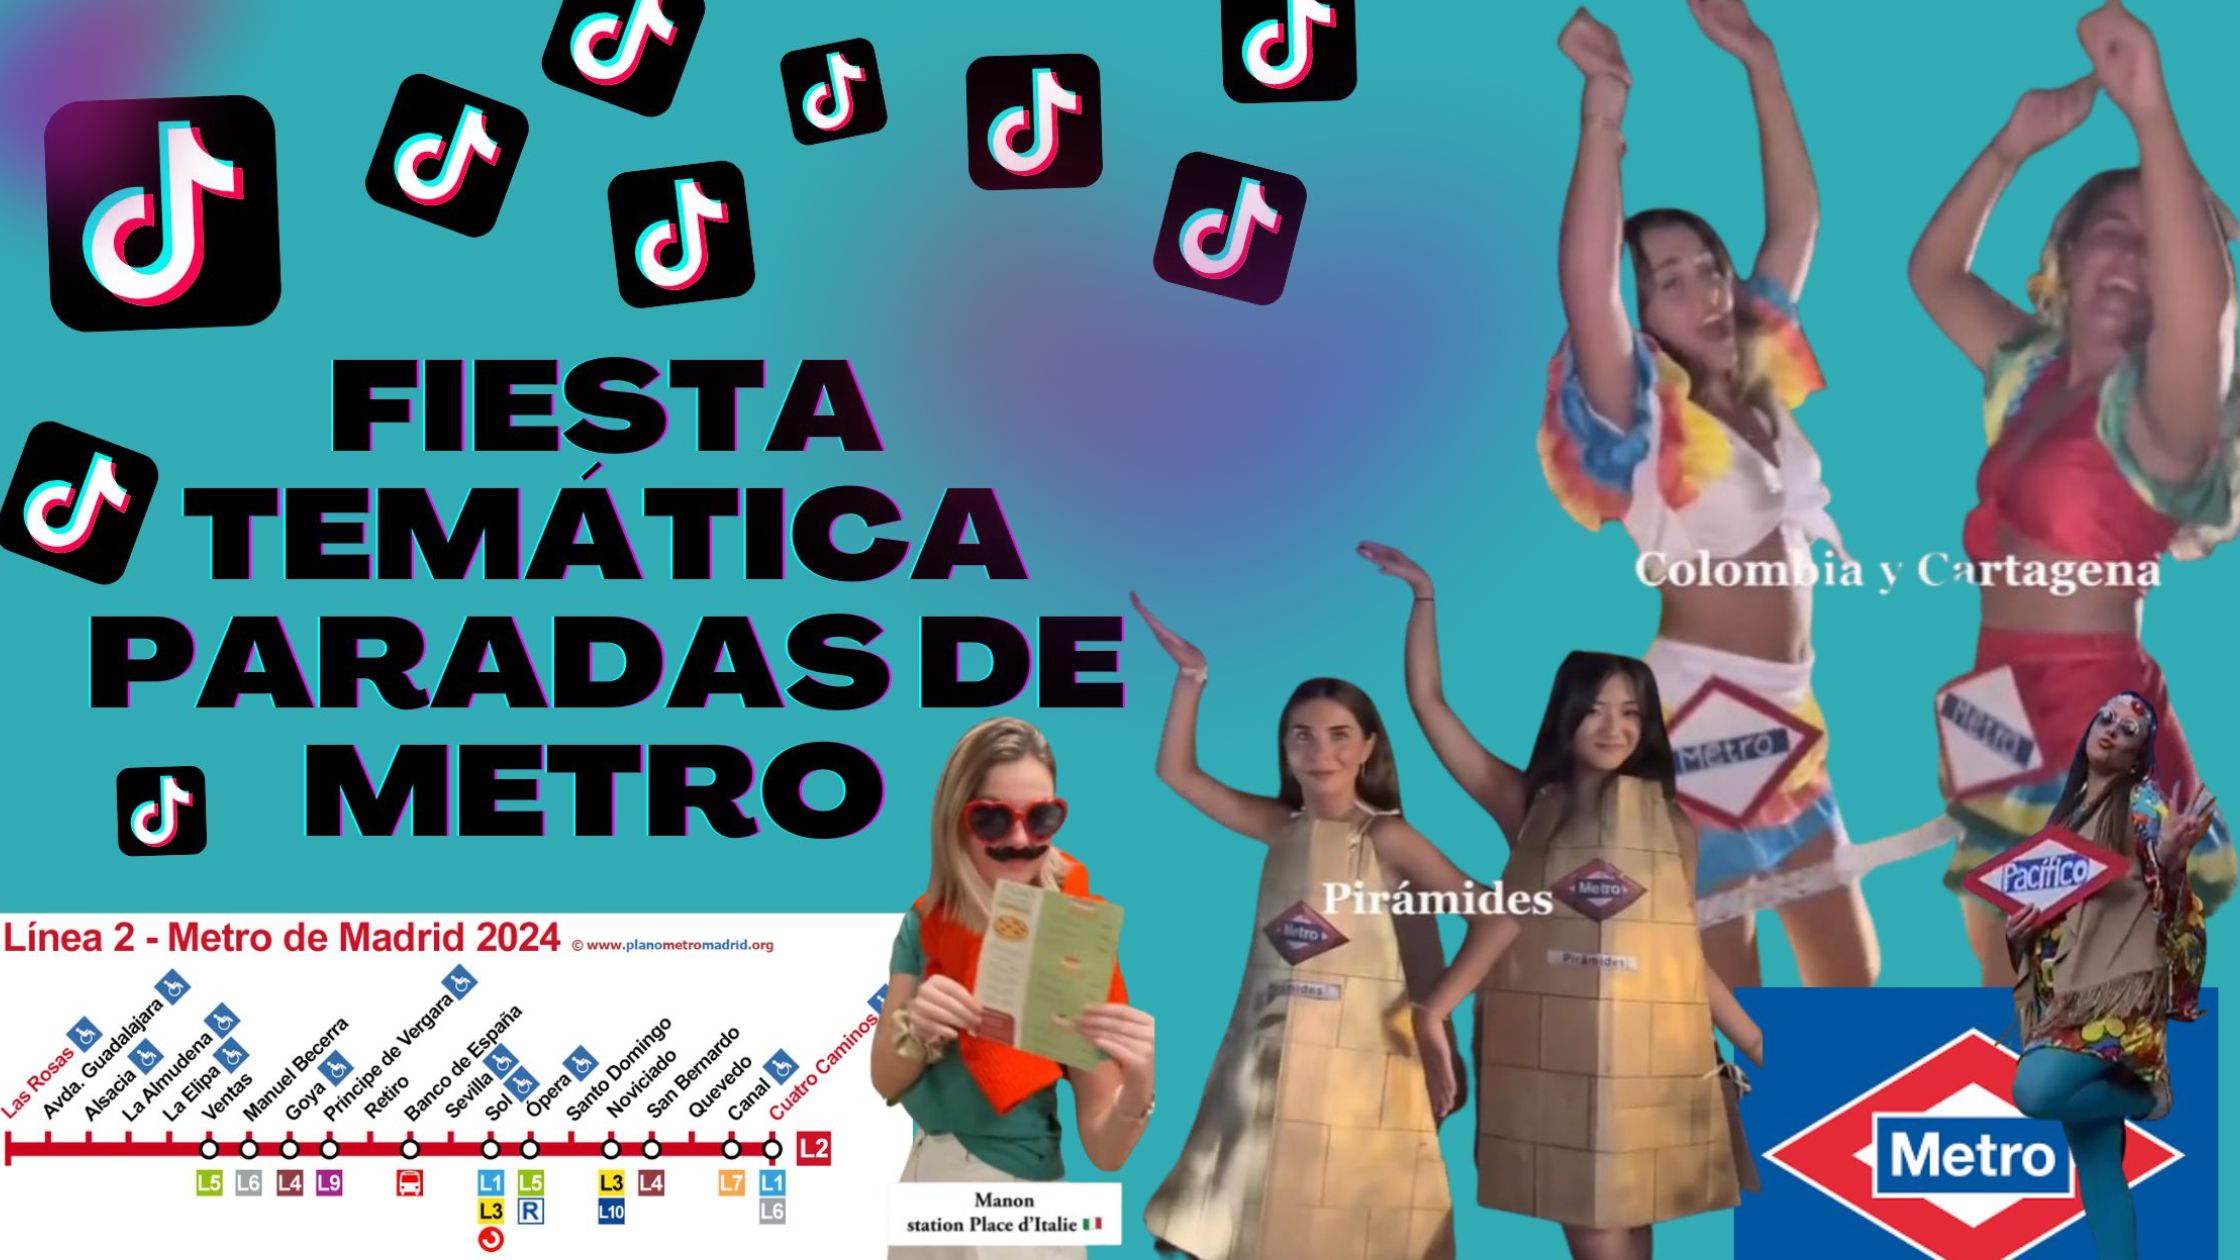 Ideas para organizar una fiesta temática basada en las paradas de metro de un ciudad, como ejemplo ponemos imágenes del metro de Madrid: Piramides, Colombia, Cartagena, Pacífico, Sol...